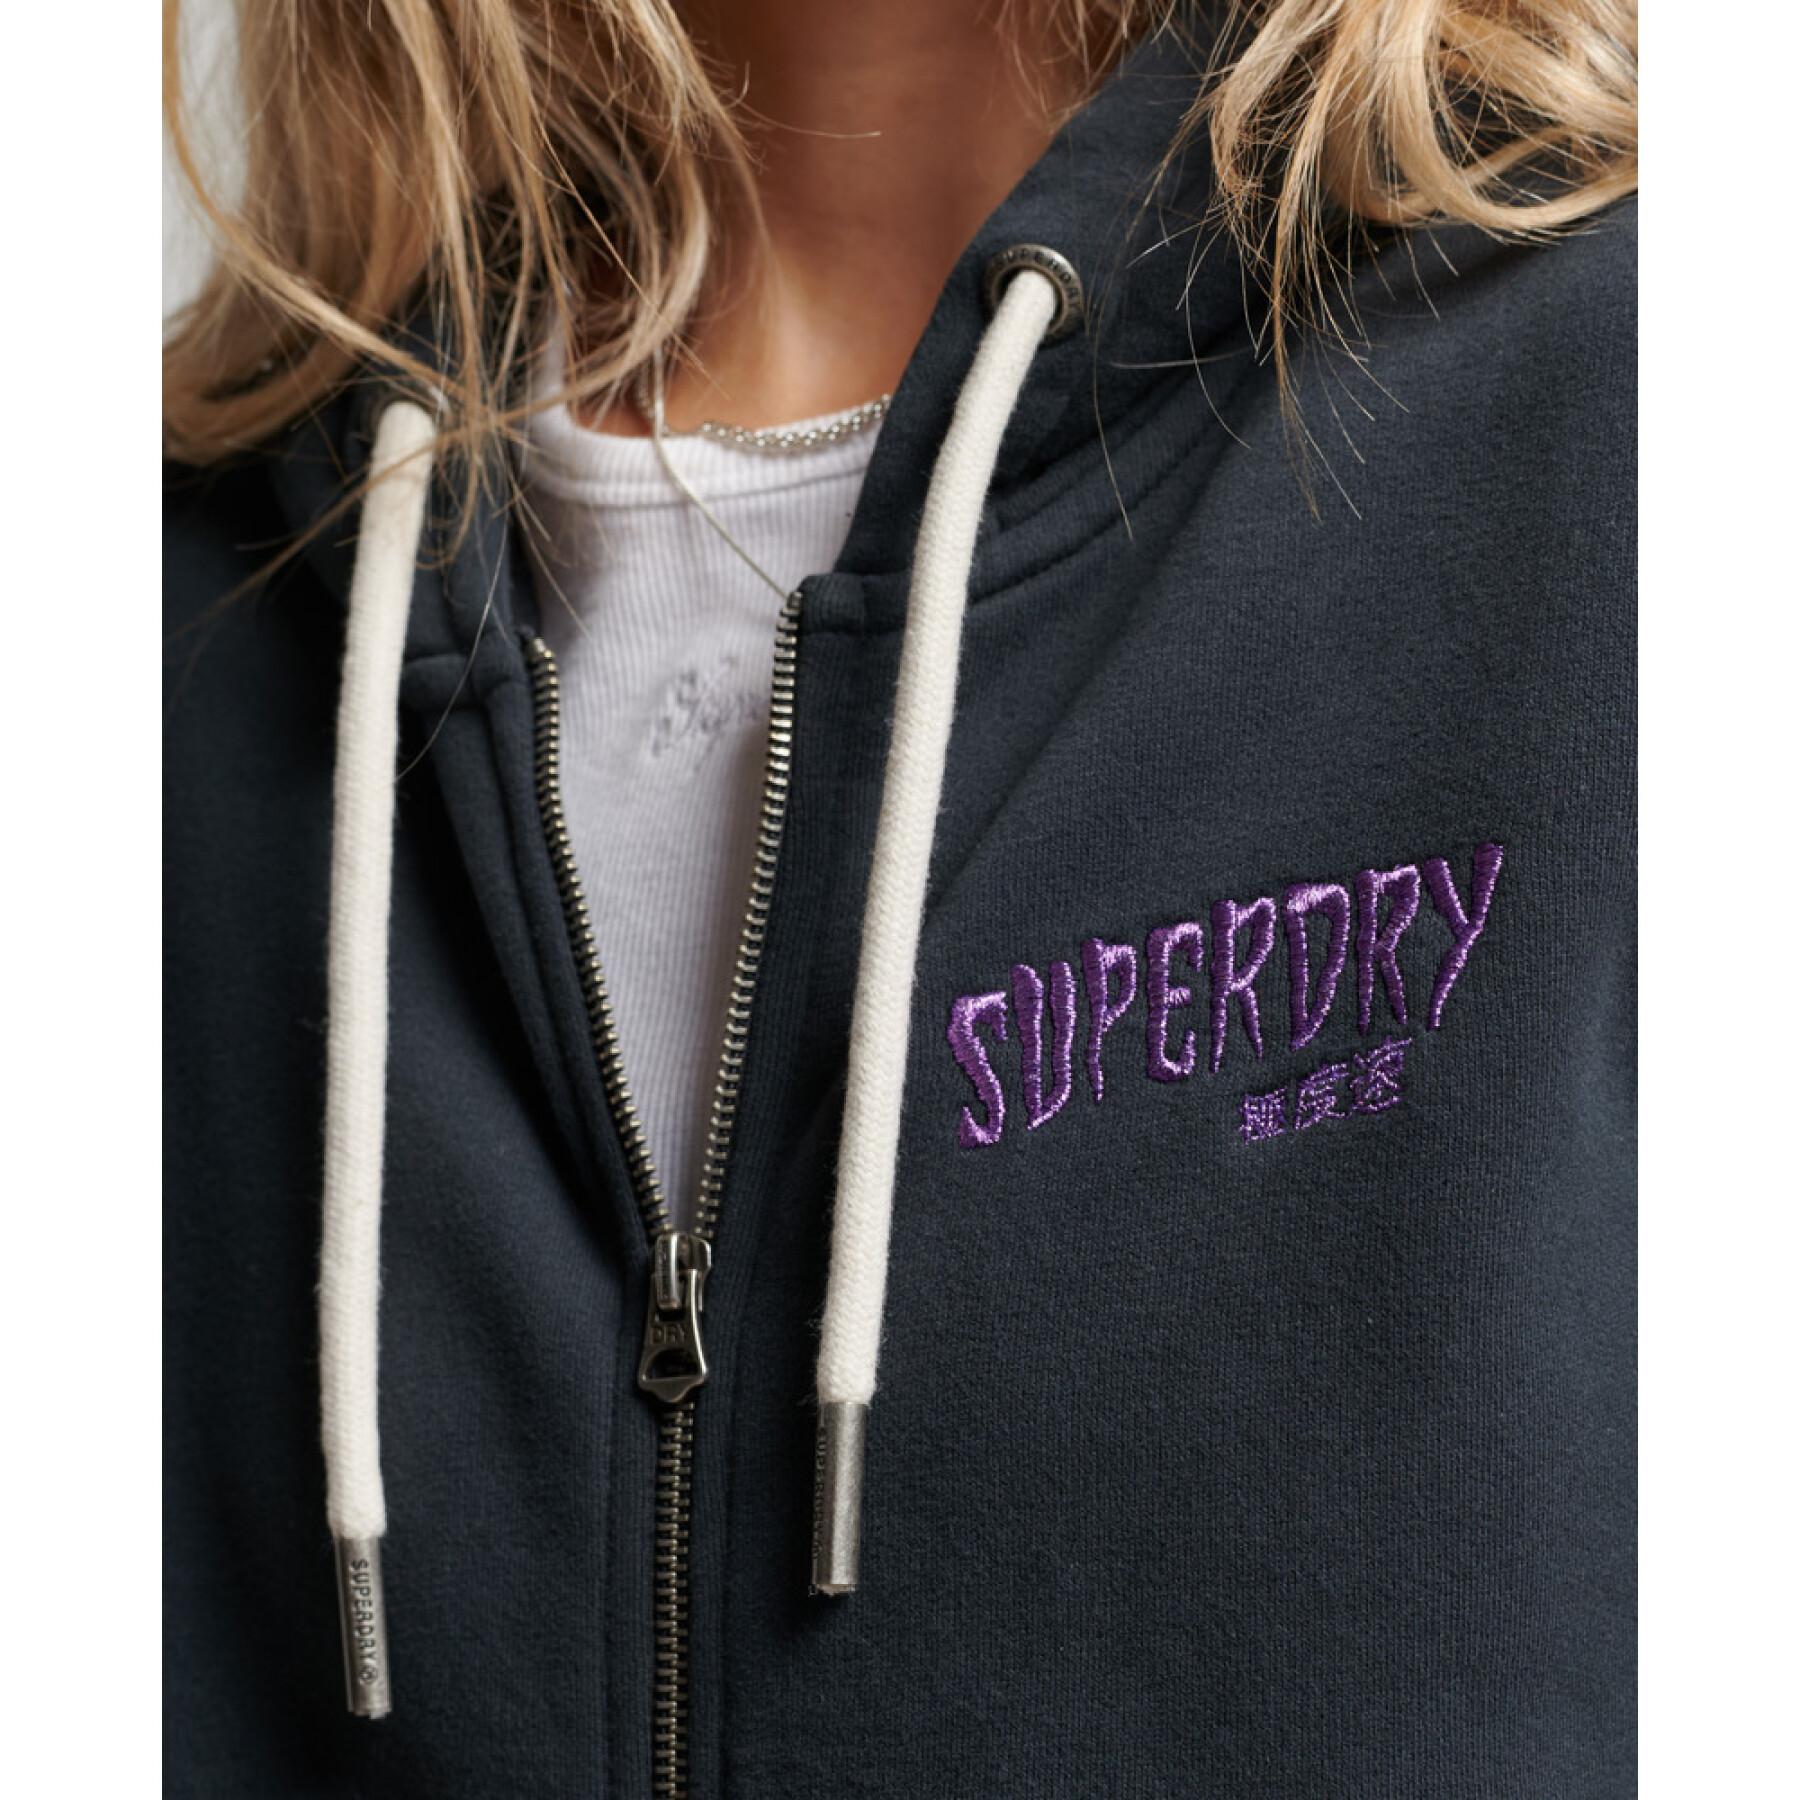 Sweatshirt felpa con cappuccio da donna Superdry Vintage Merch Store